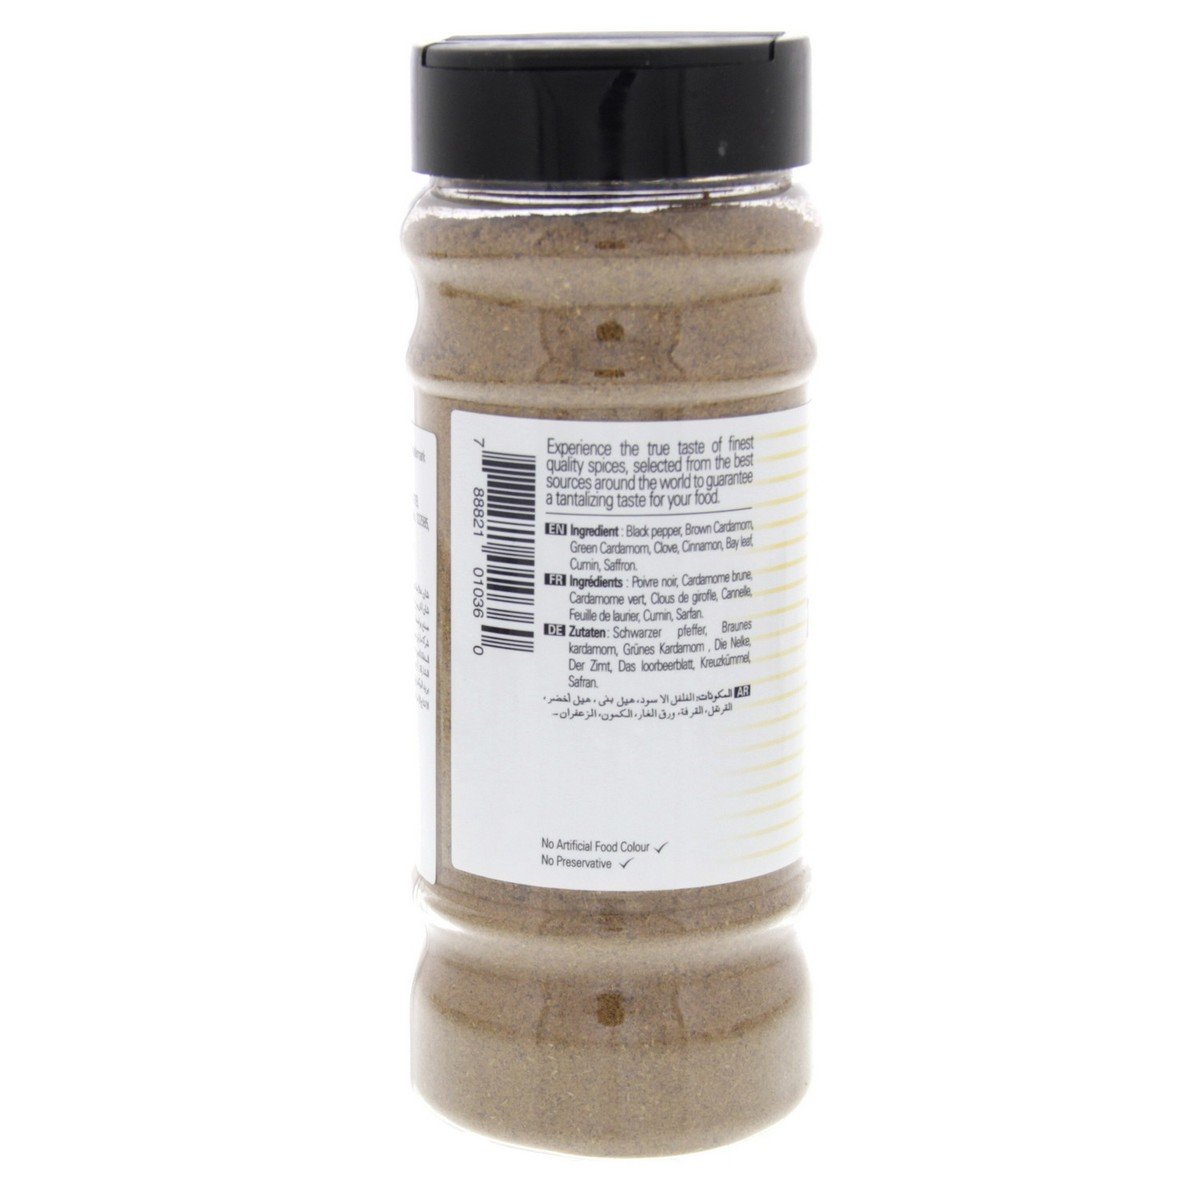 Shan Zafrani Garam Masala Powder 150 g